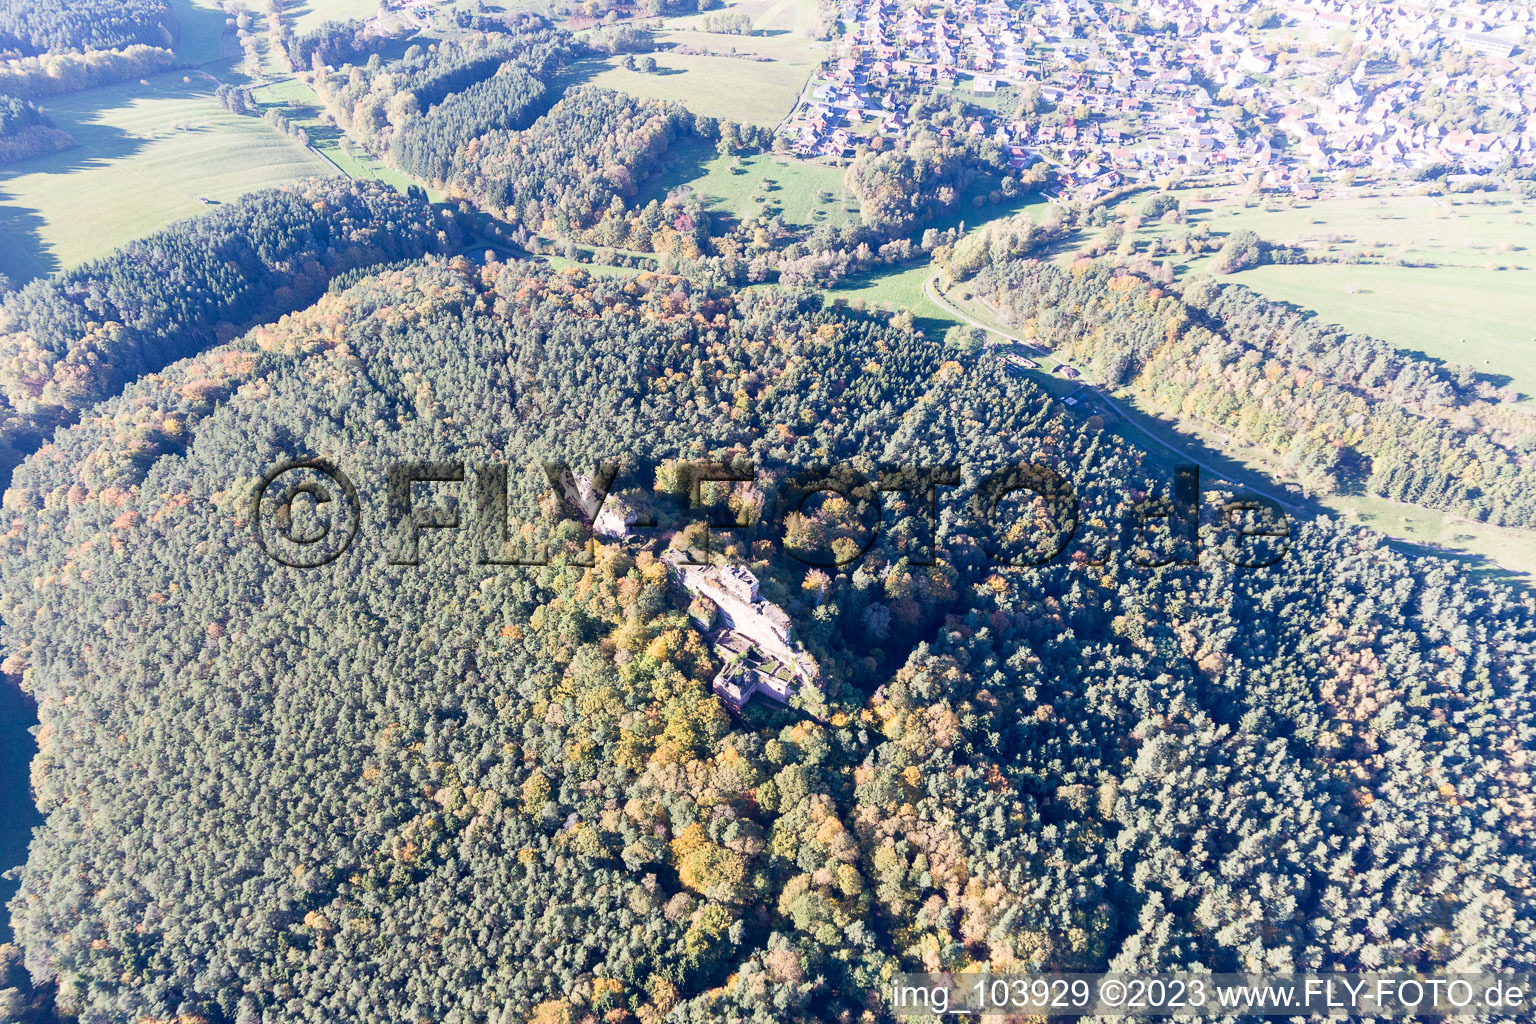 Ruines du château de Drachenfels à Busenberg dans le département Rhénanie-Palatinat, Allemagne vue du ciel